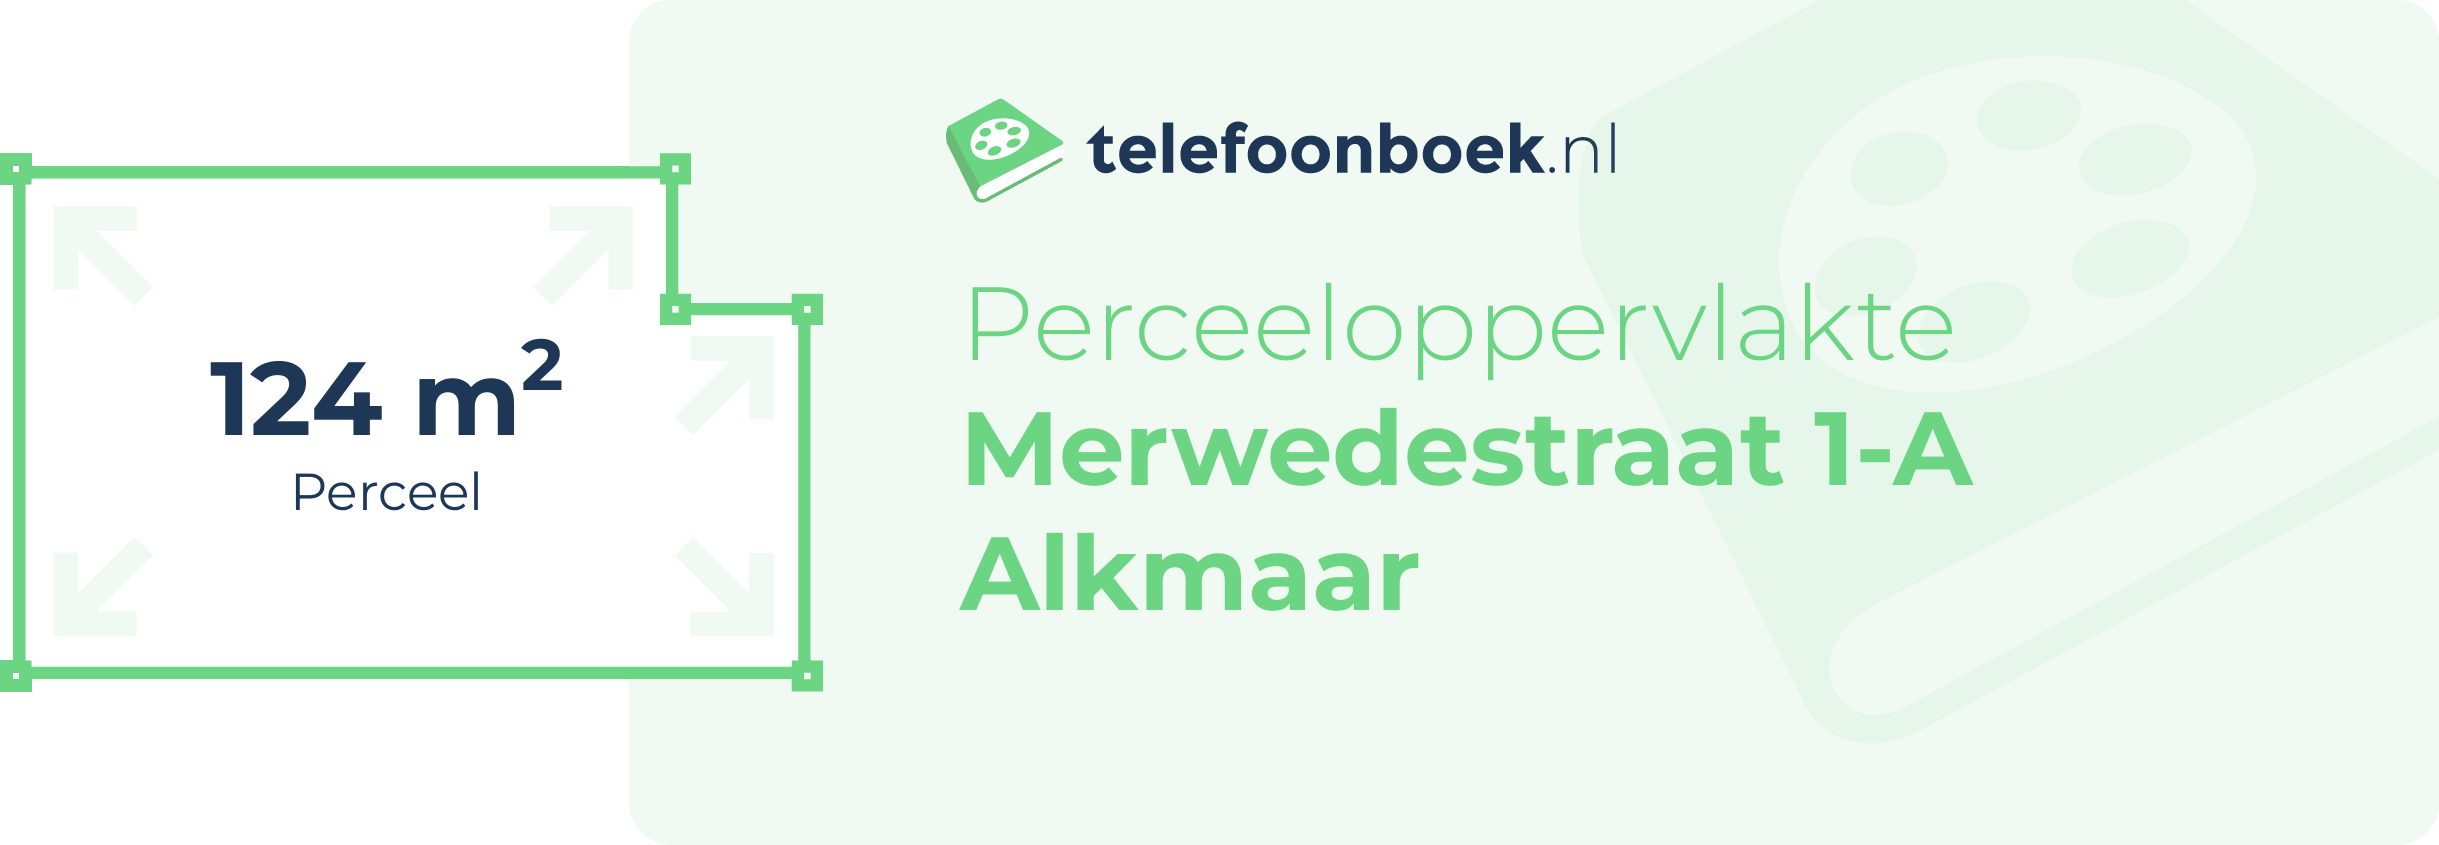 Perceeloppervlakte Merwedestraat 1-A Alkmaar